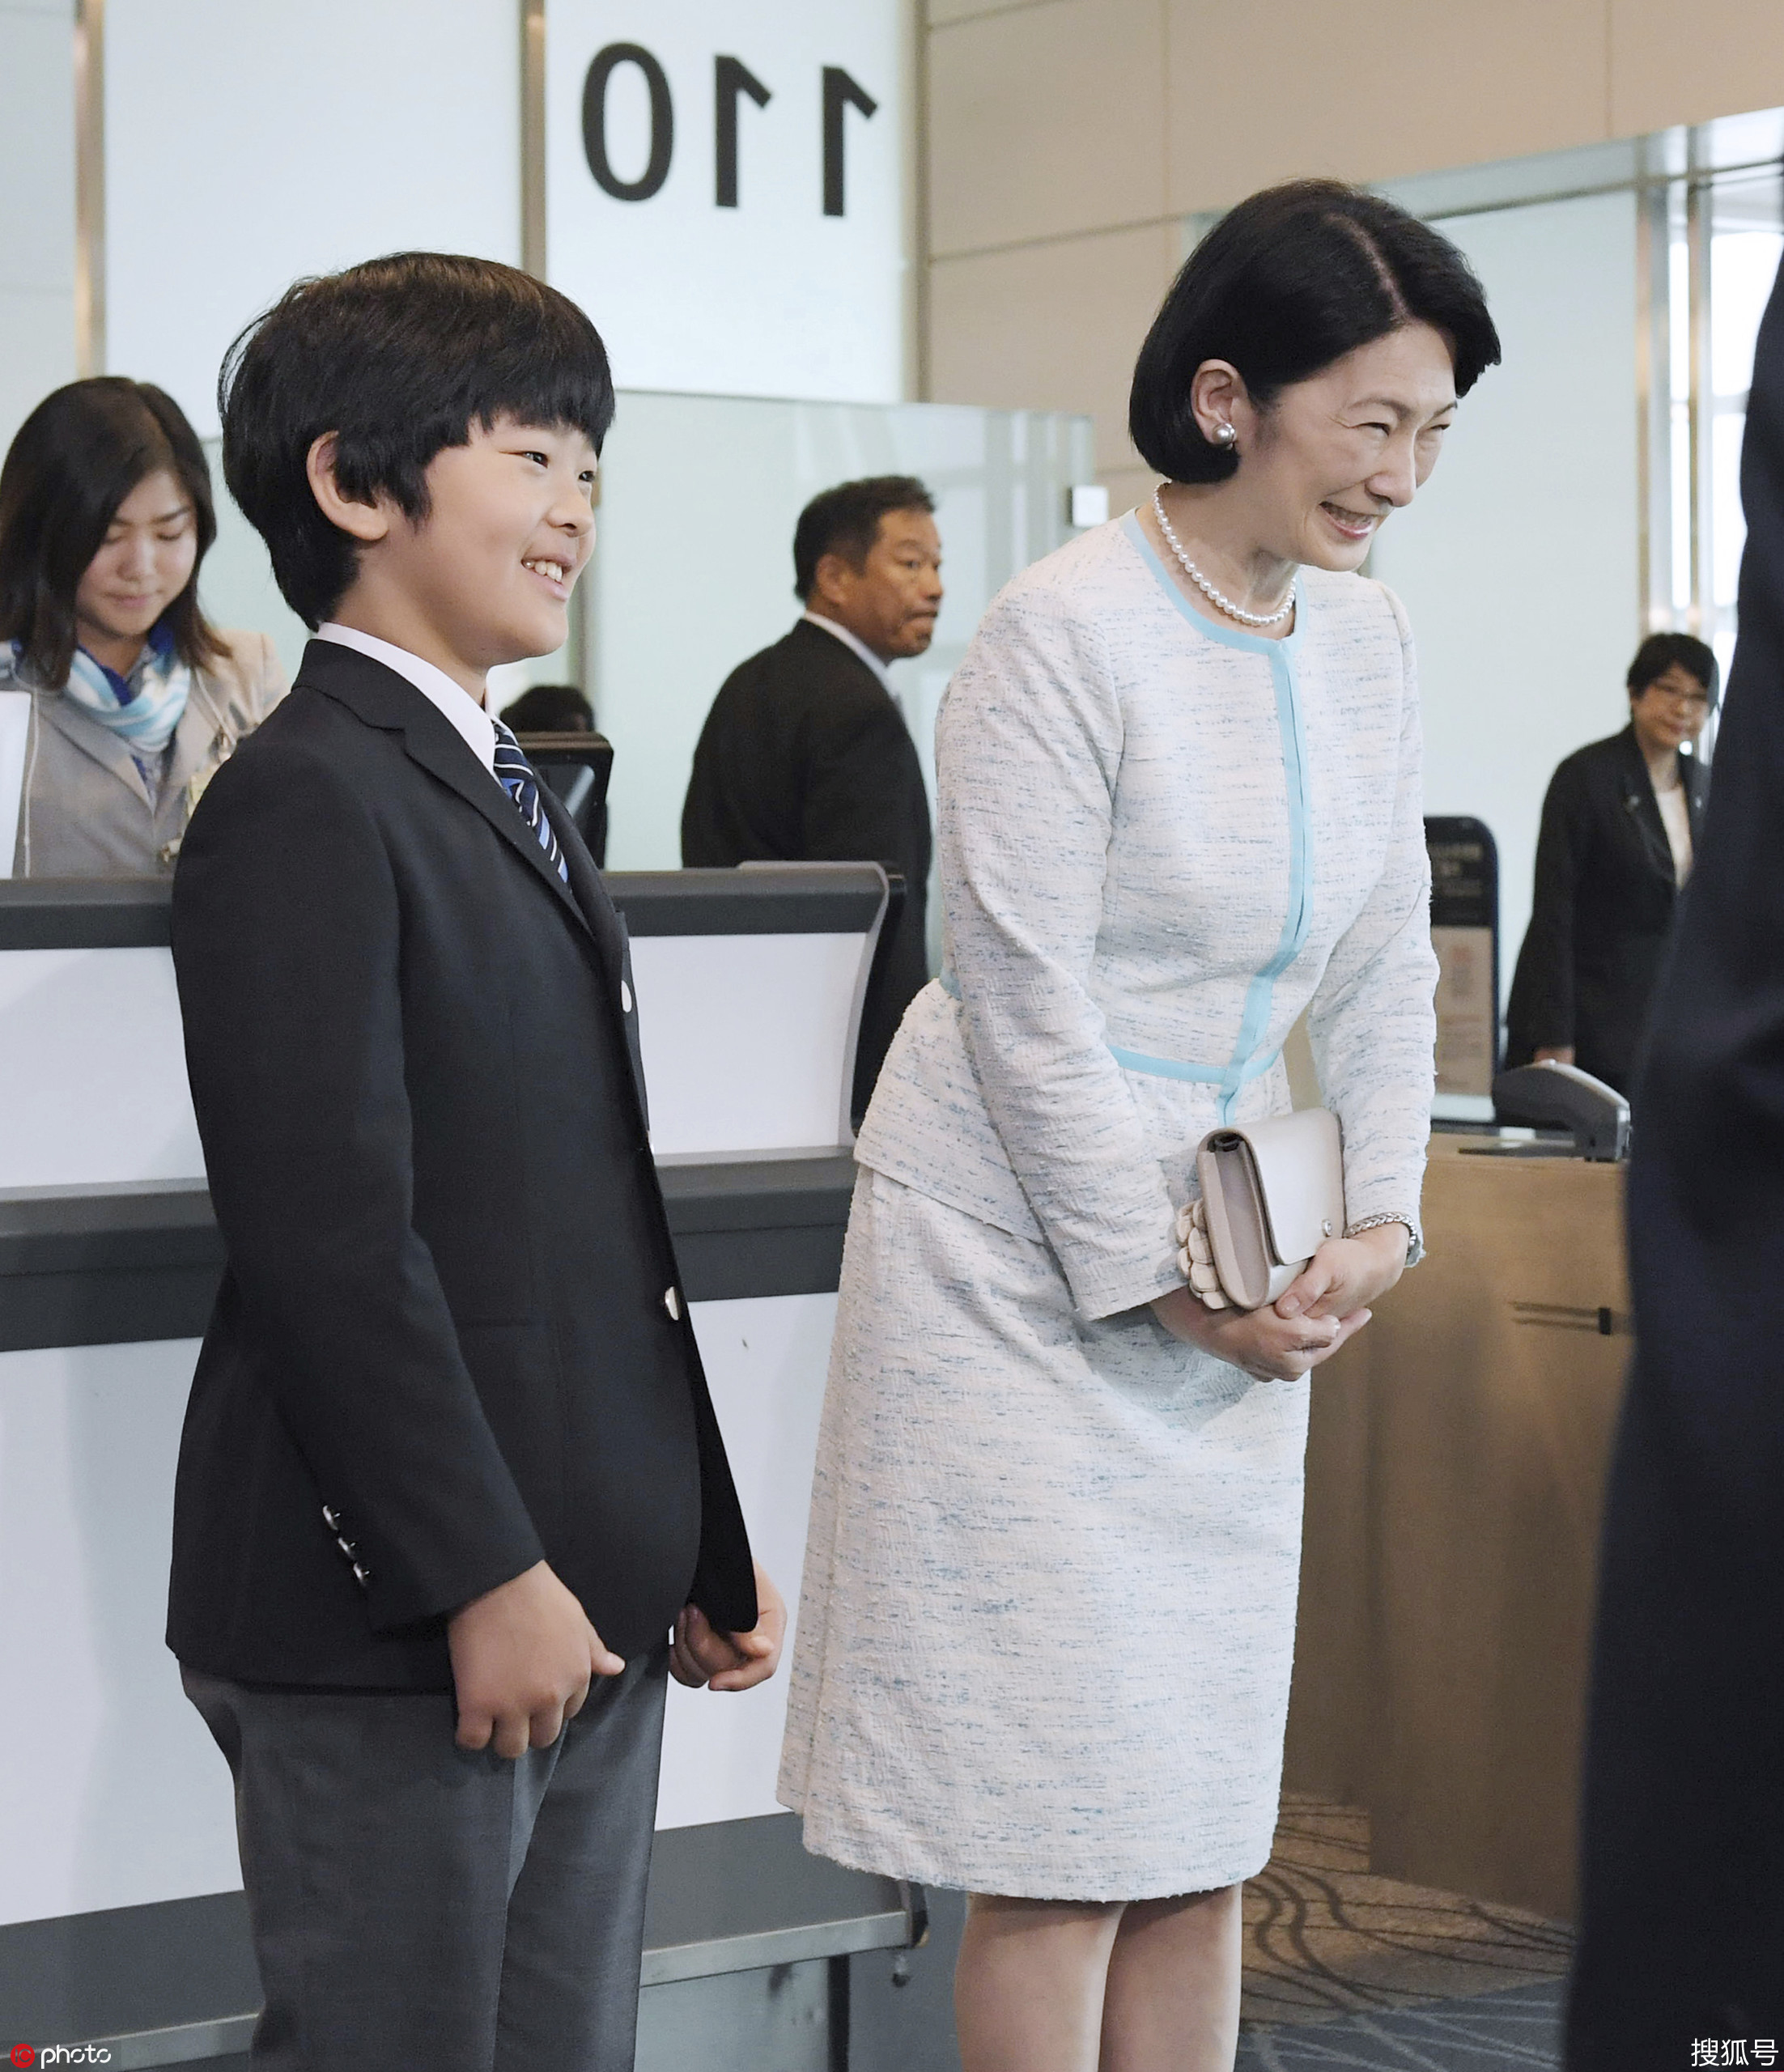 日本1悠仁小王子首次海外旅行 将随父母出访不丹